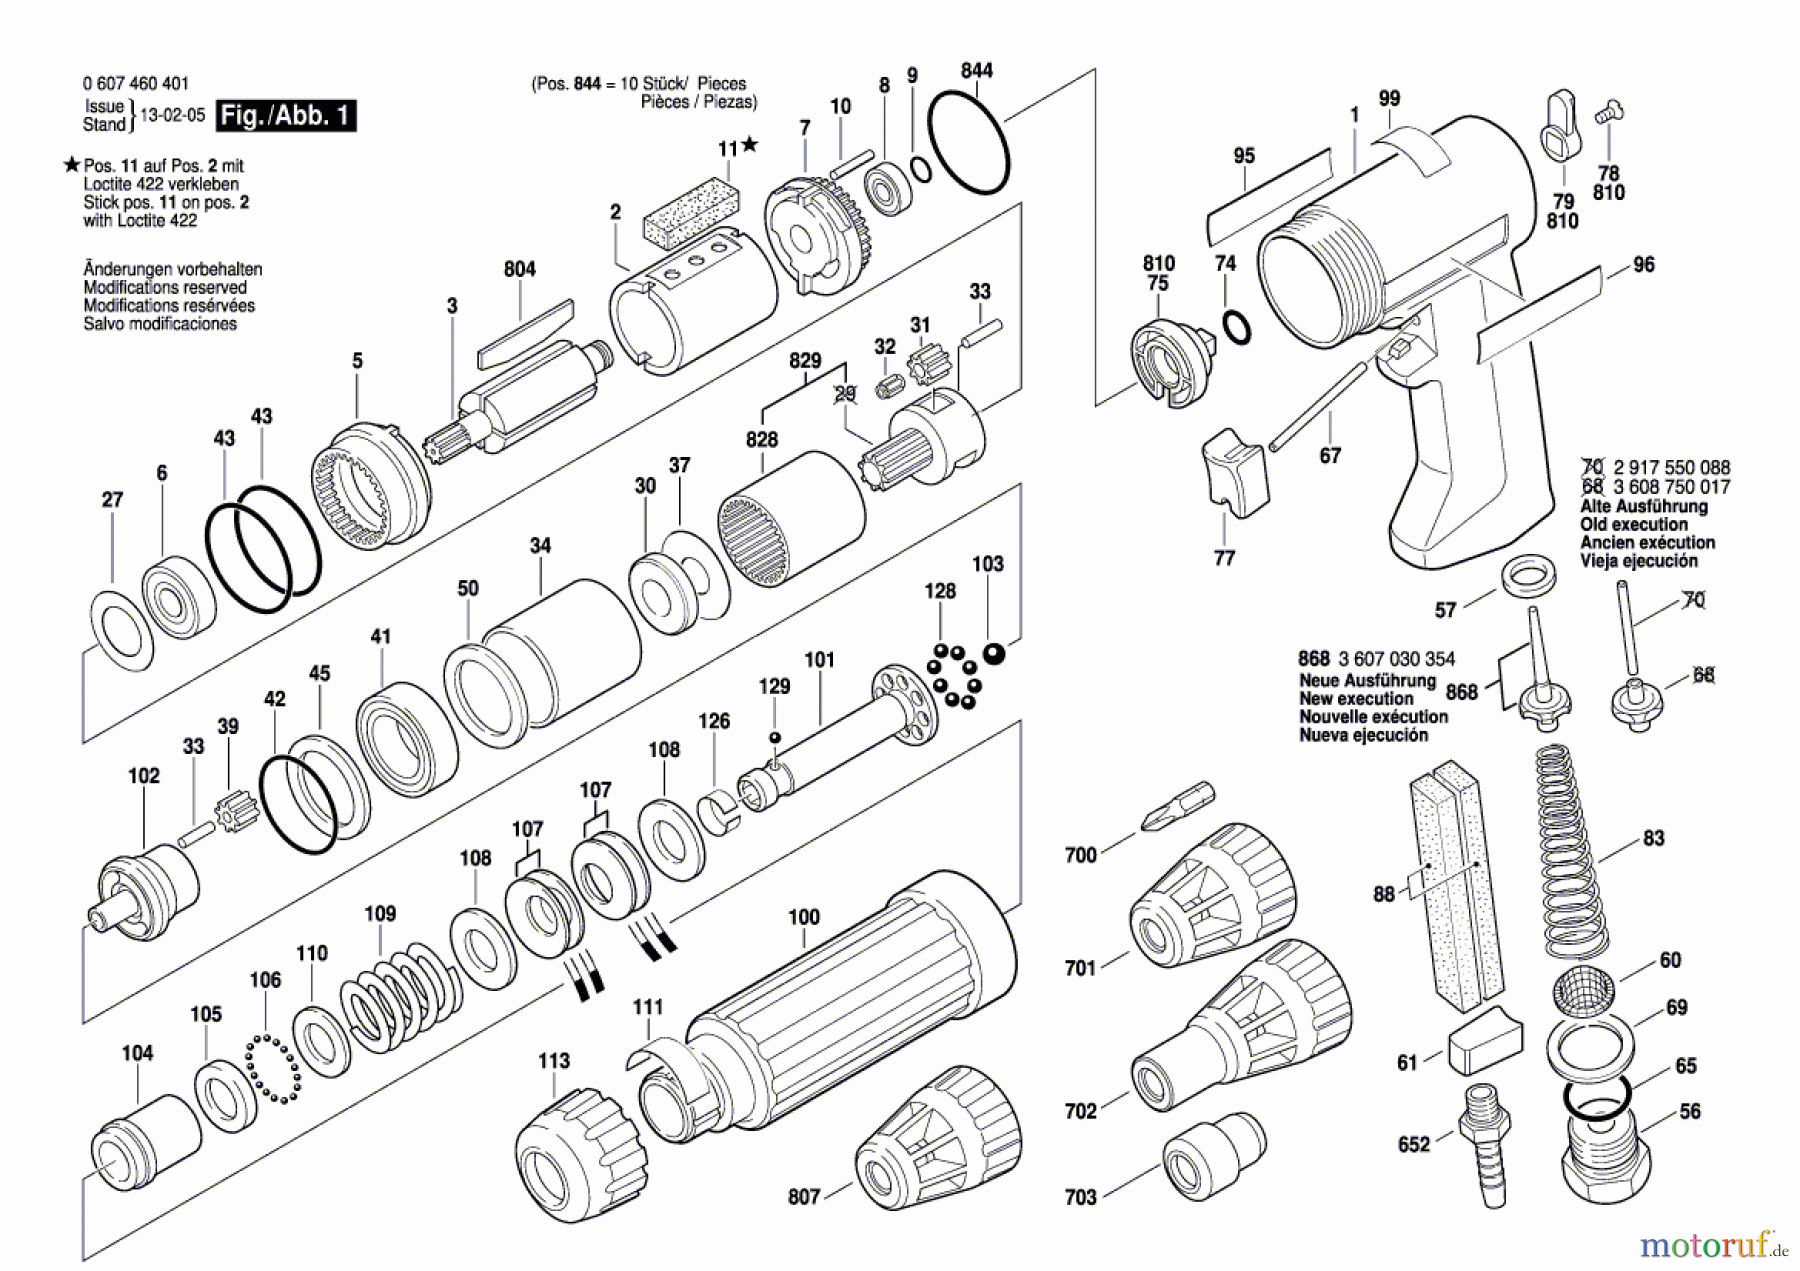  Bosch Werkzeug Pw-Schrauber-Serv 320 WATT-SERIE Seite 1